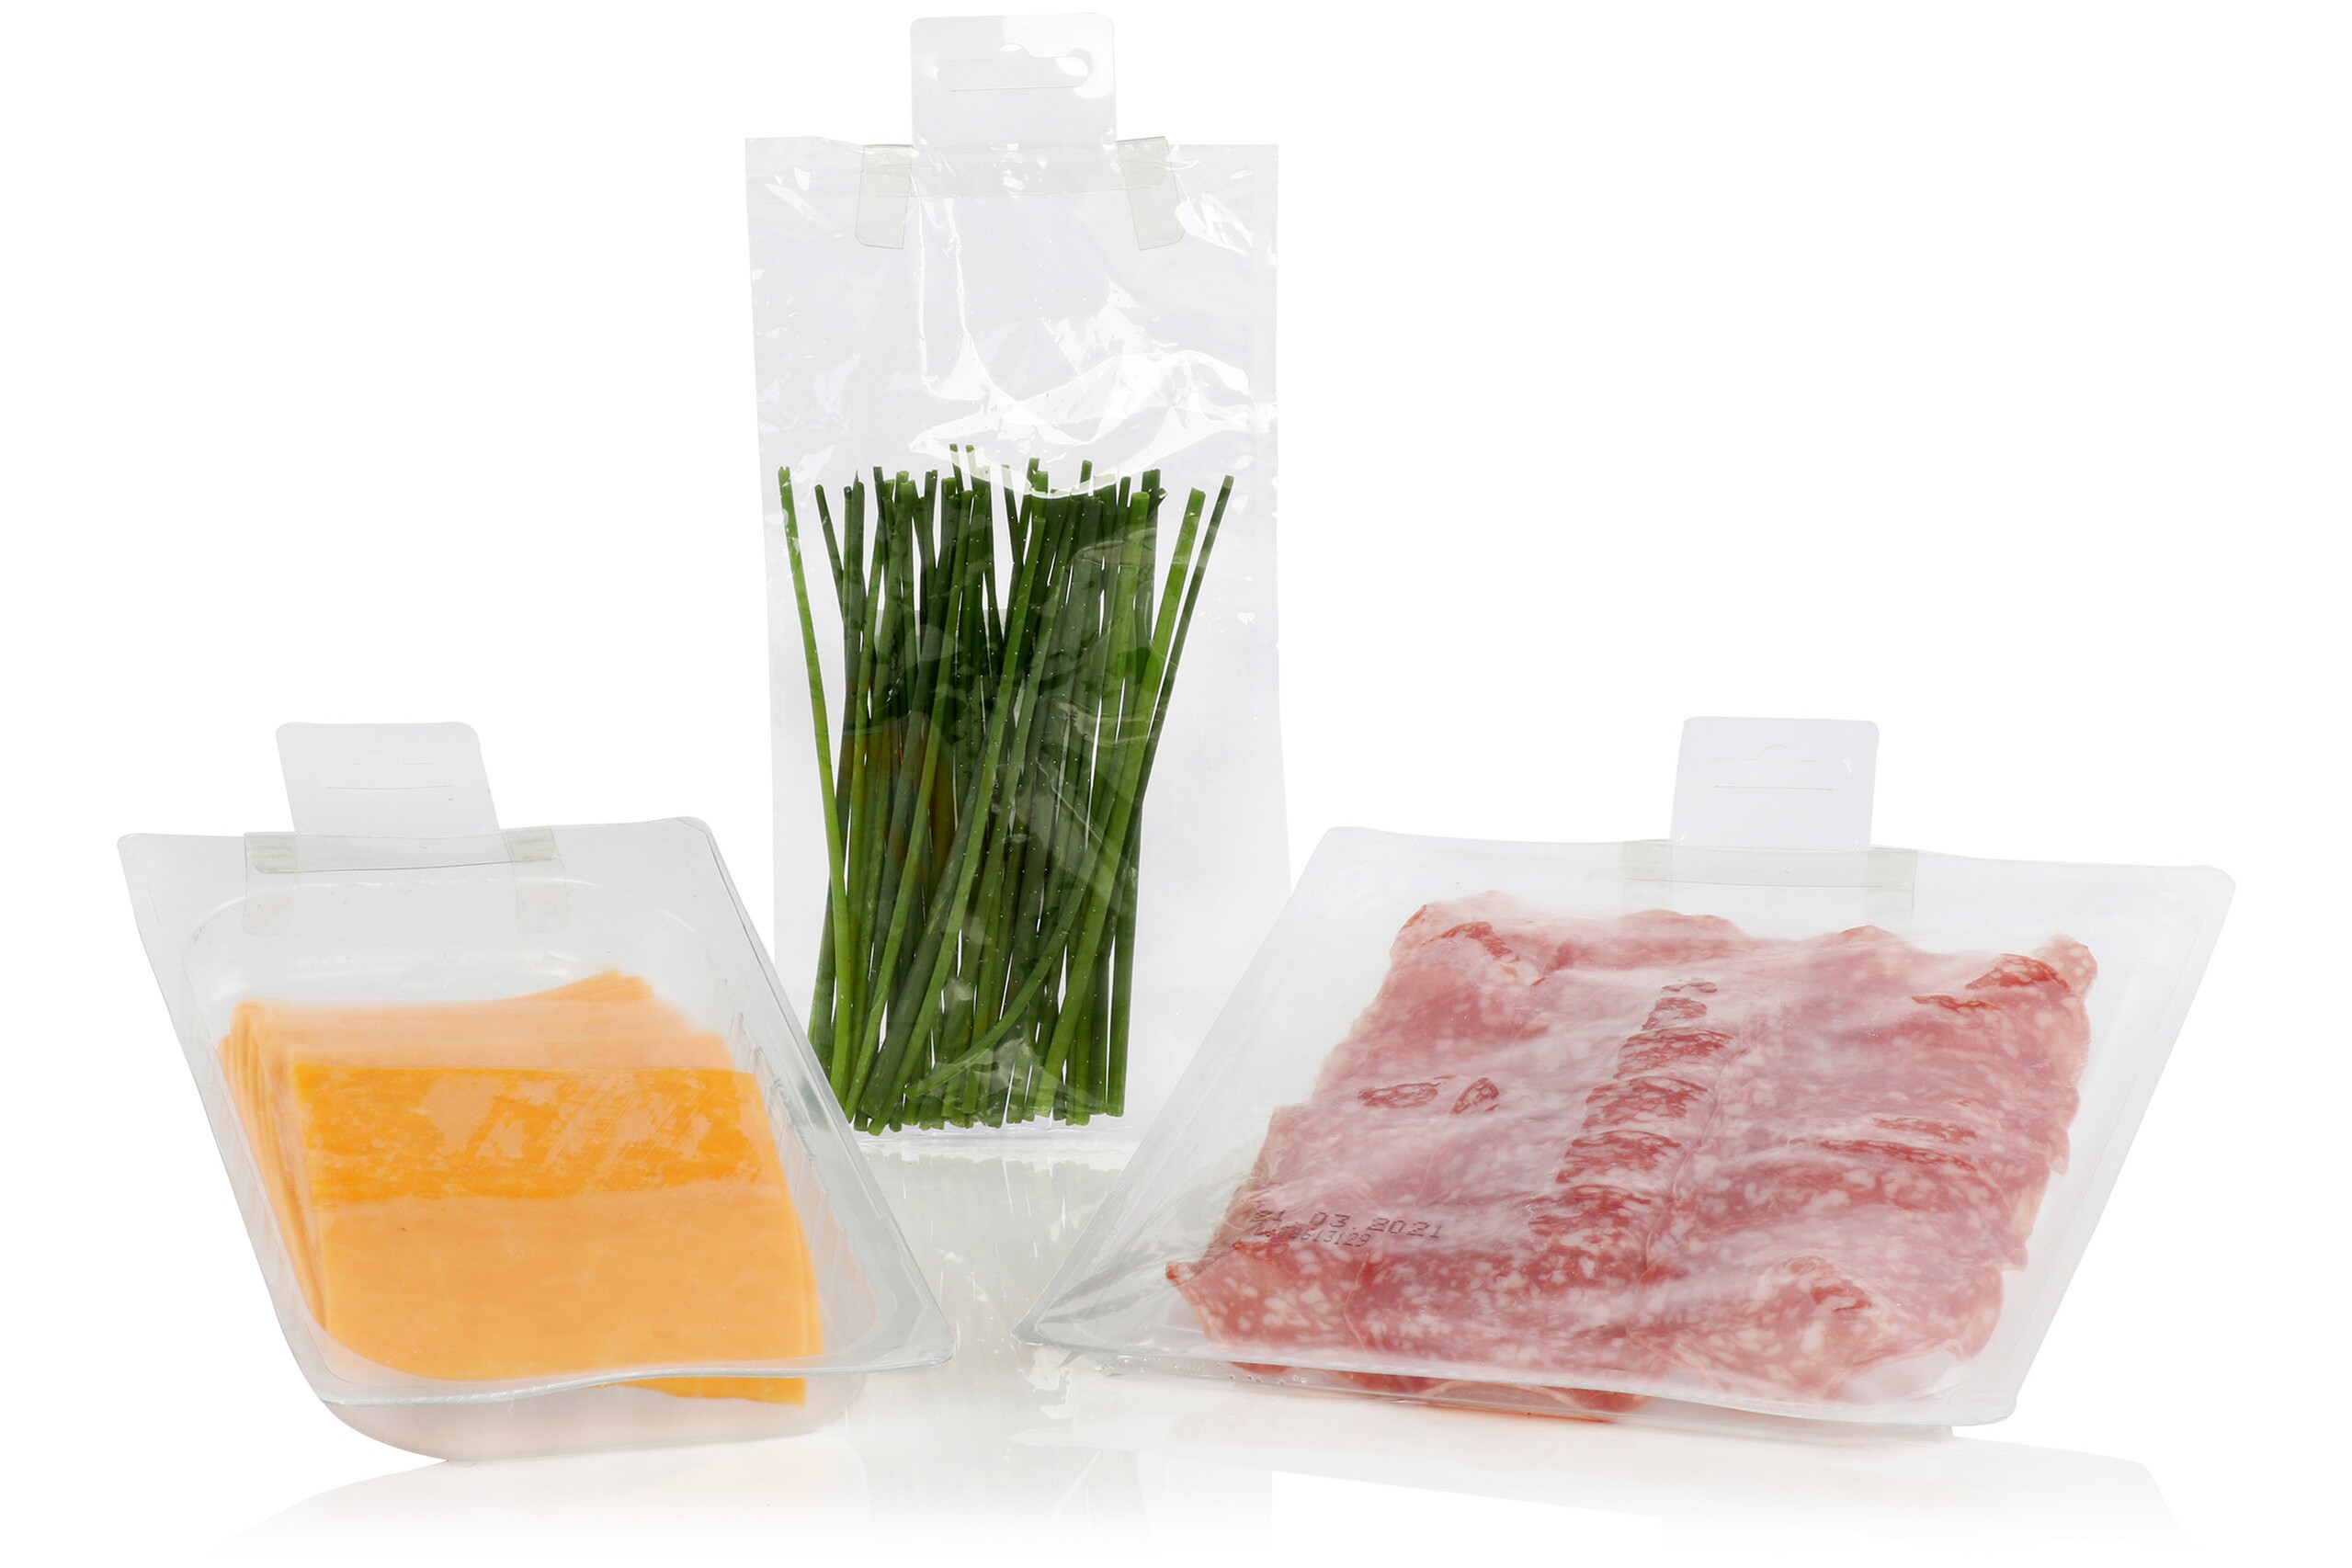 Trois emballages alimentaires avec des contenus différents et des étiquettes de suspension en plastique.